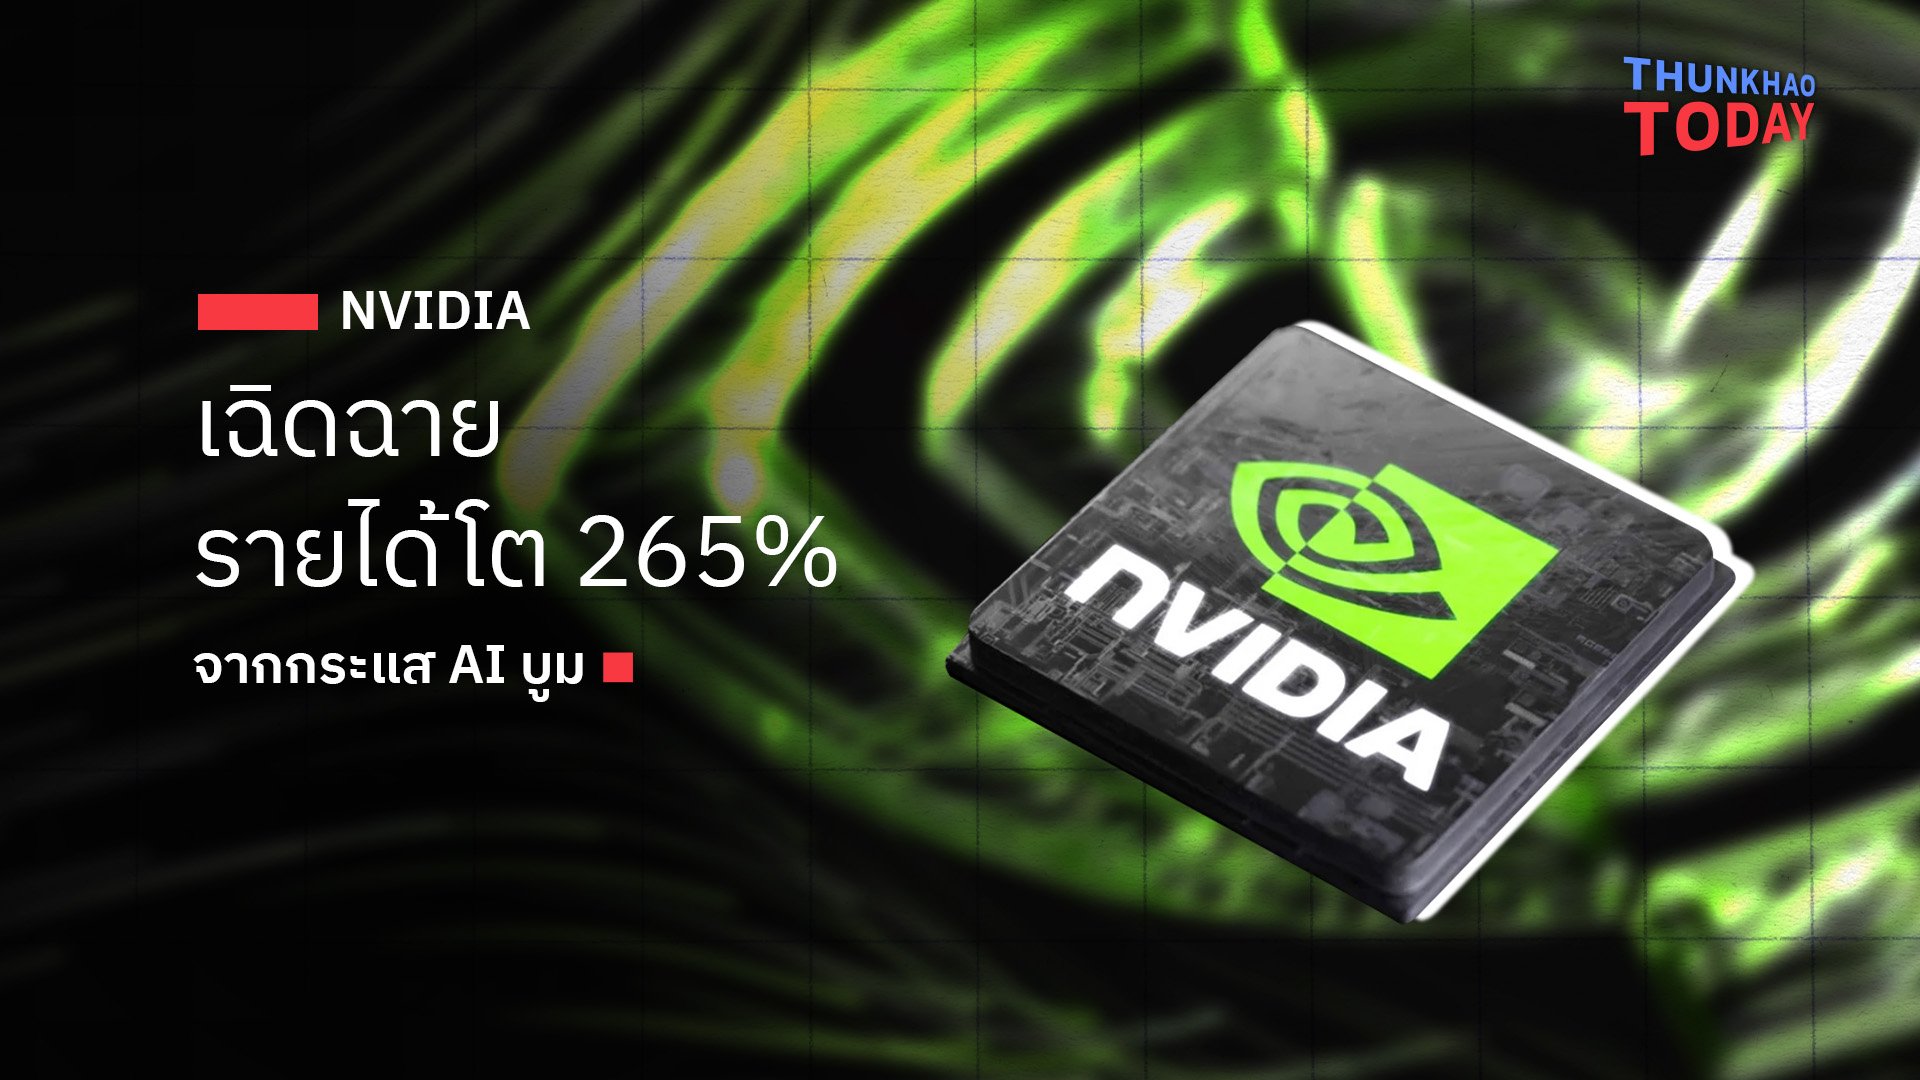 NVIDIA เฉิดฉาย รายได้โต 265% จากกระแส AI บูม